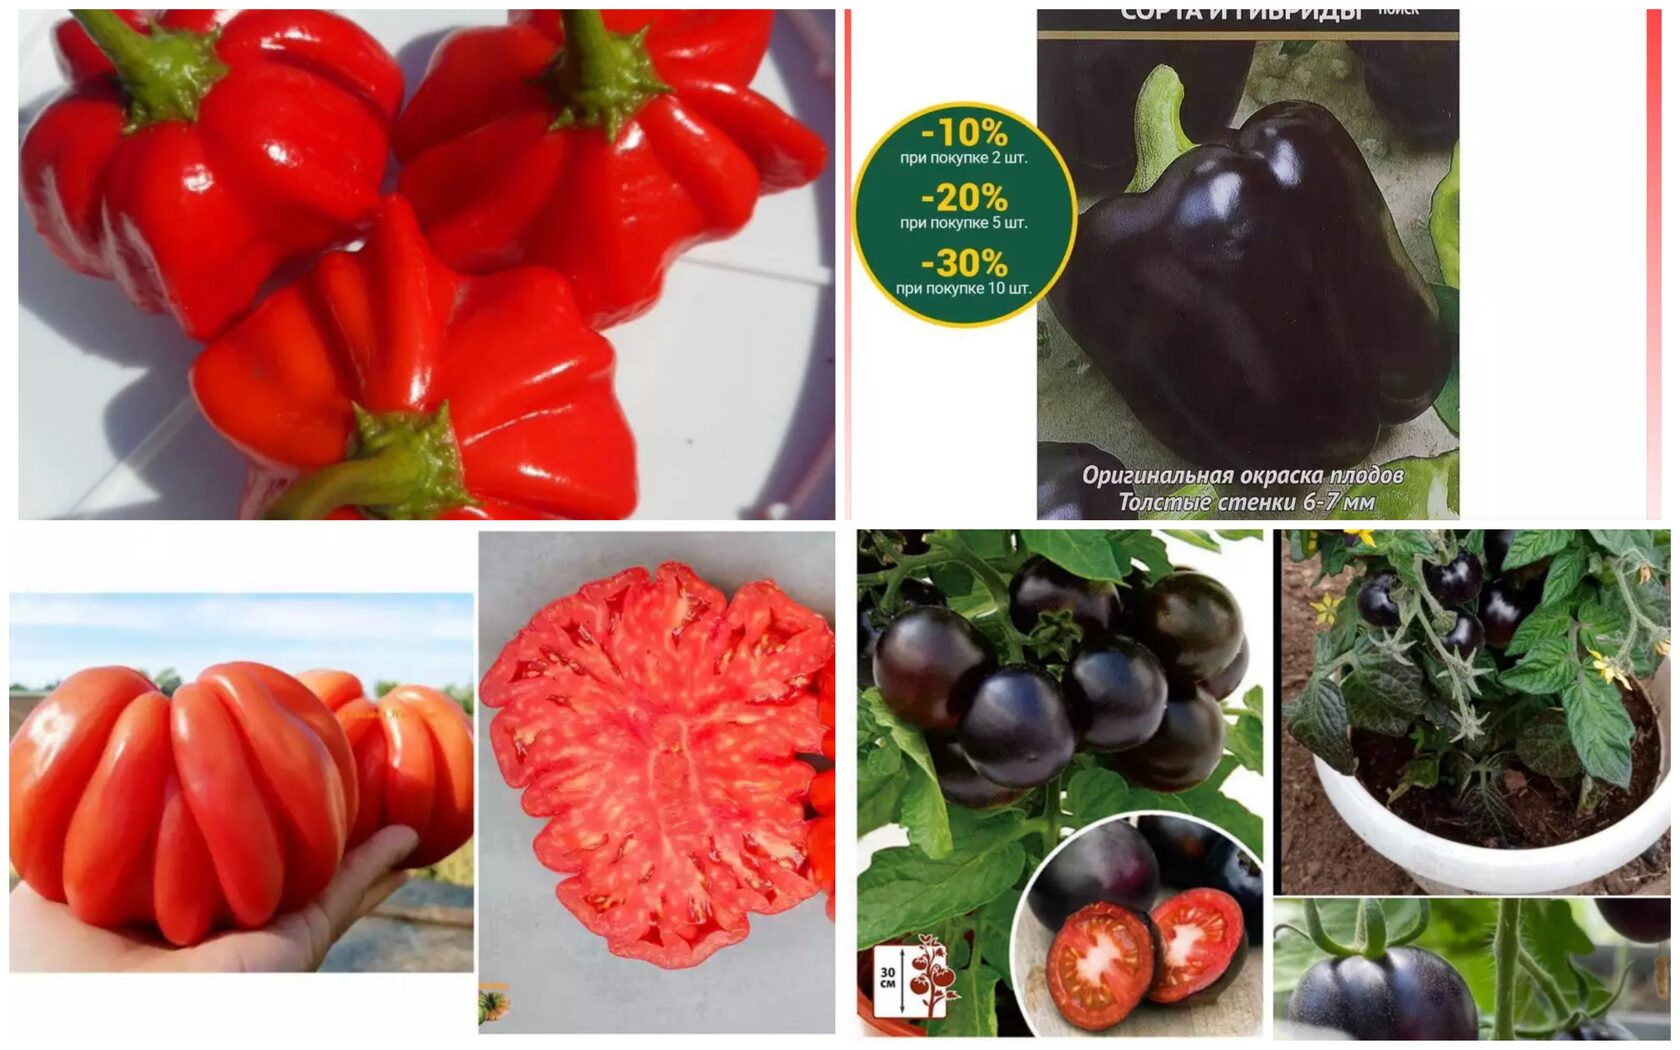 По вкусу ребристые и черные томаты не отличаются от обычных